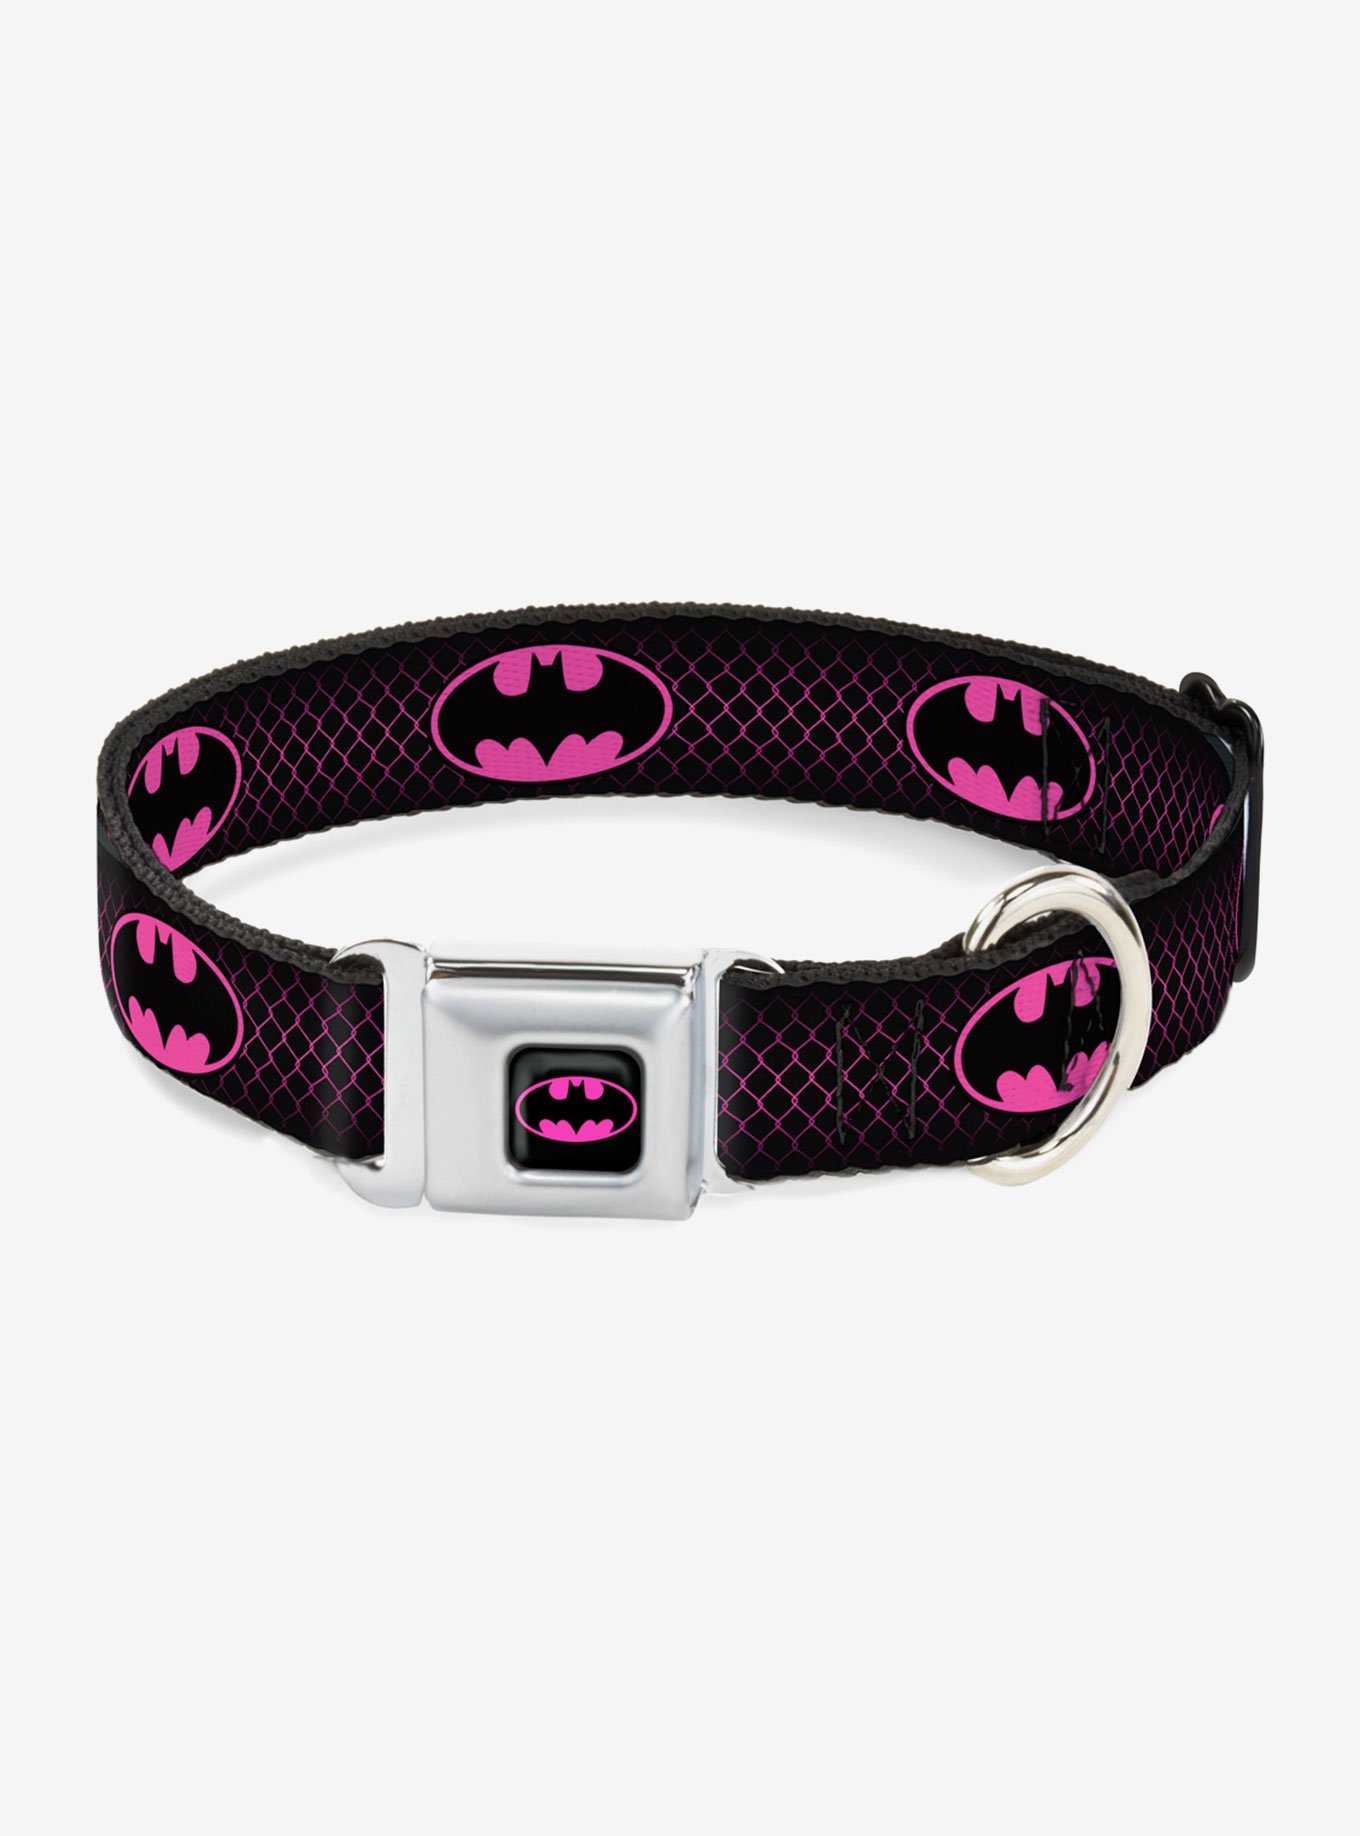 DC Comics Justice League Batman Shield Chainlink Seatbelt Buckle Pet Collar, , hi-res